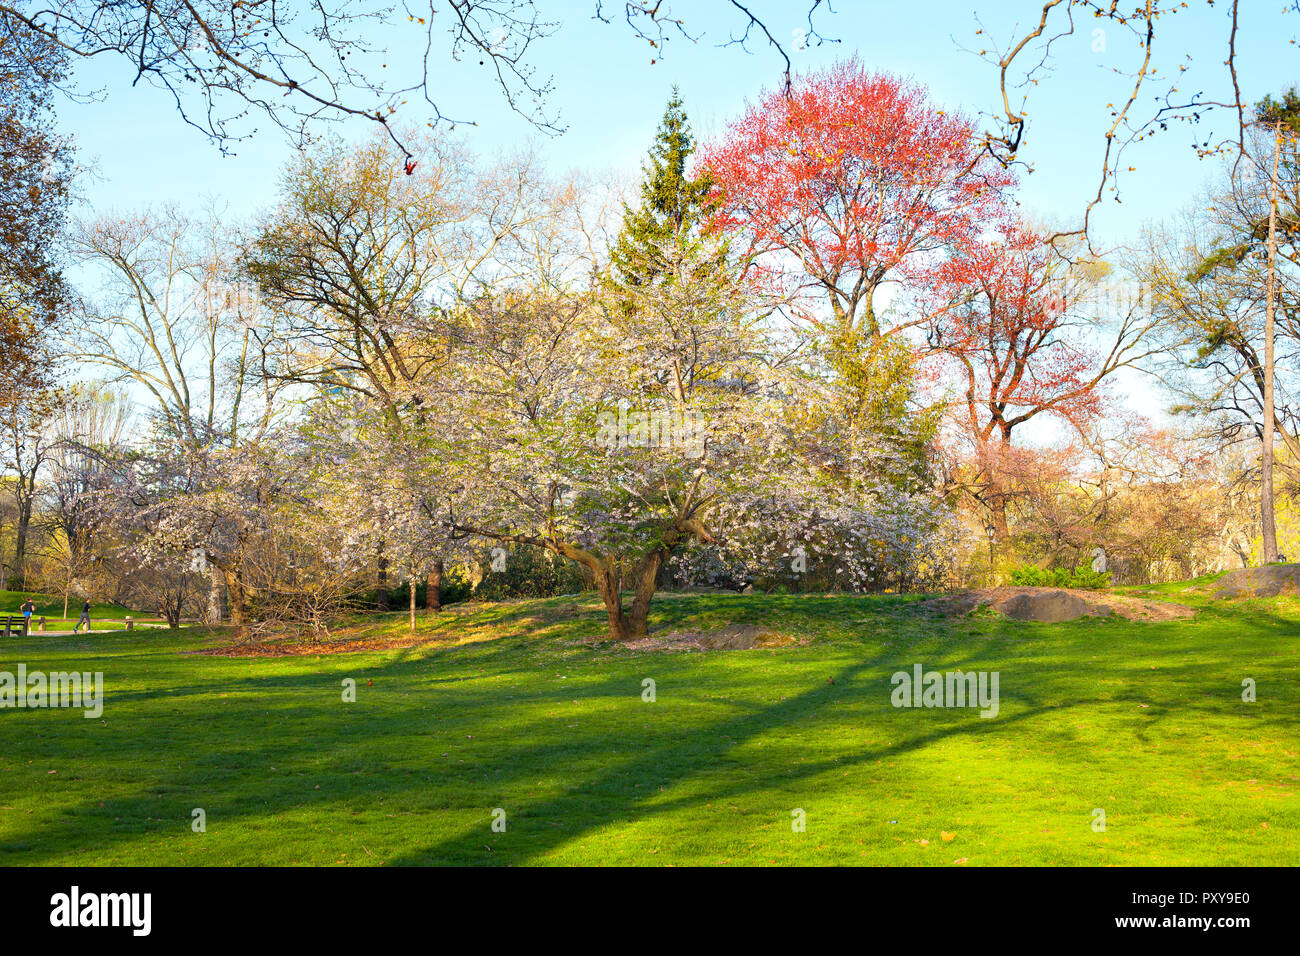 Central Park at early spring, New York City, NY, USA Stock Photo